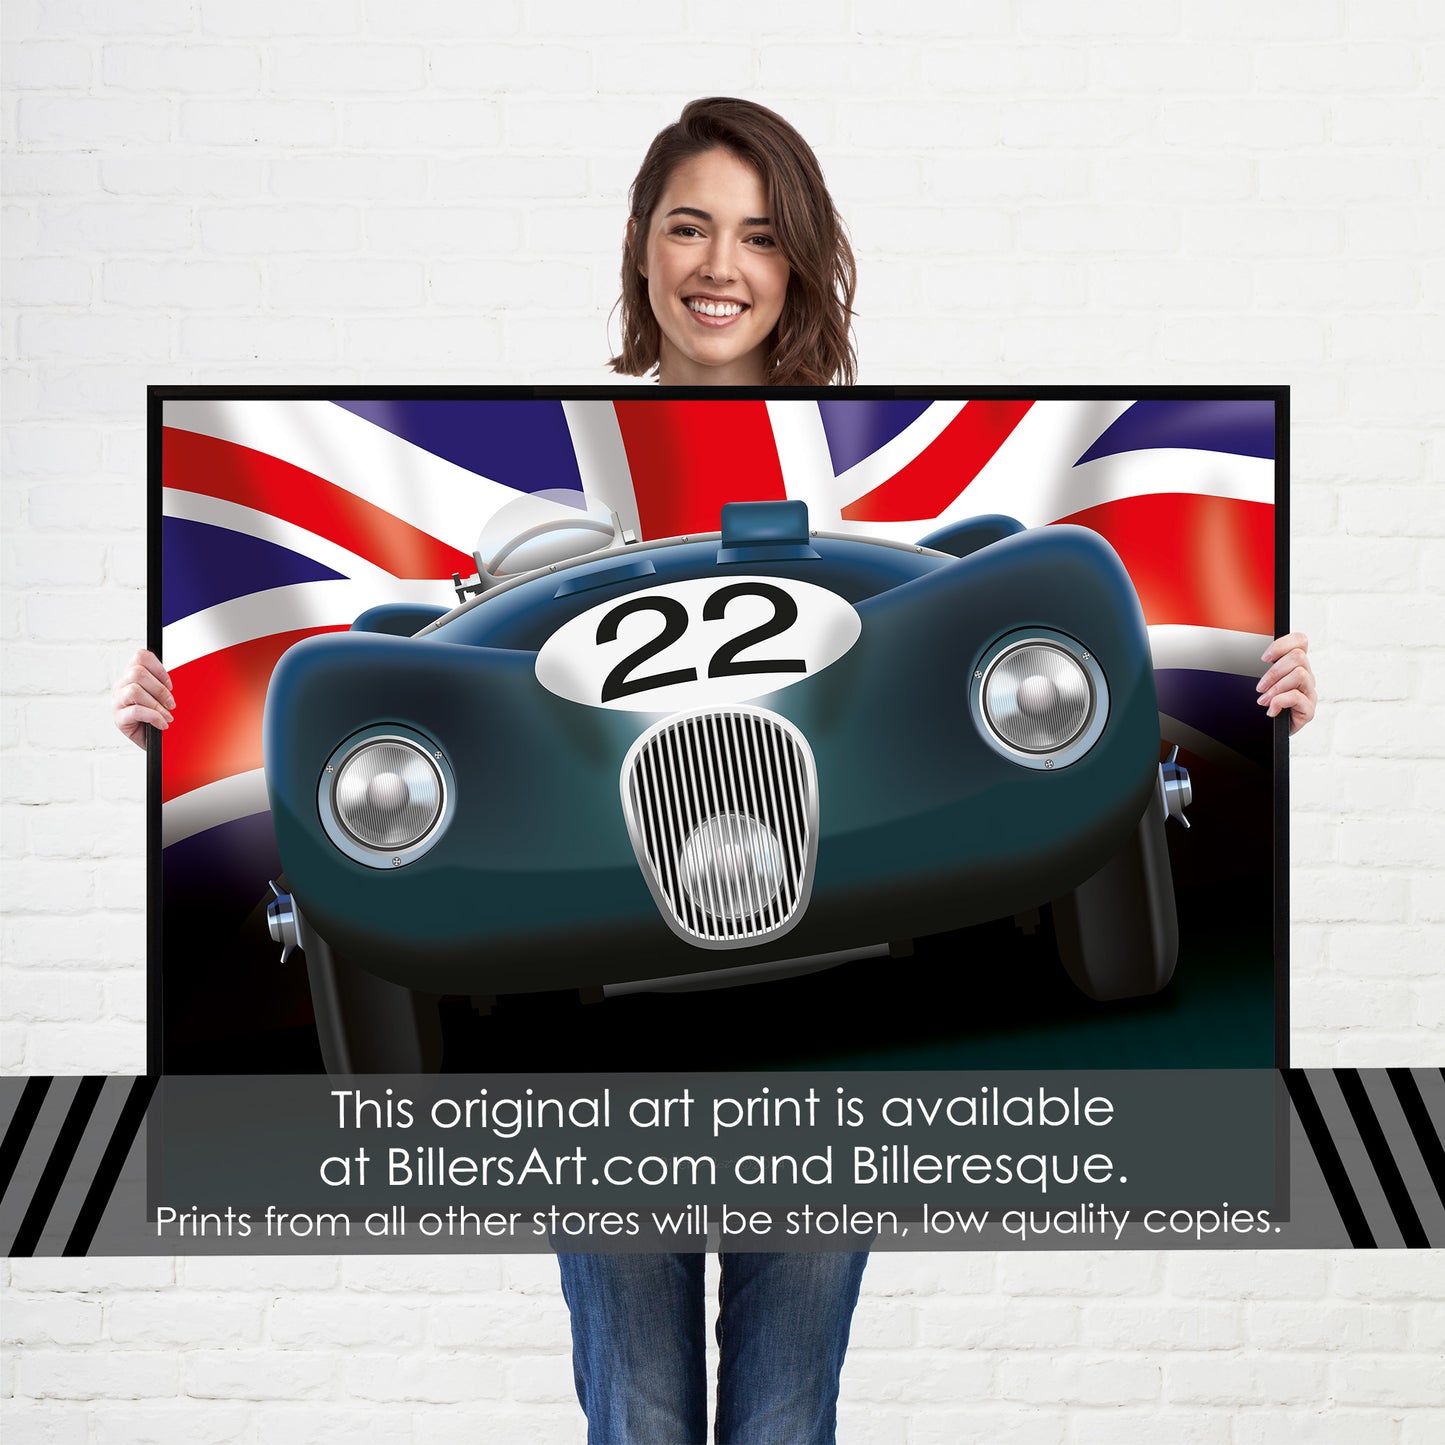 Jaguar C-Type - Le Mans Racing Car poster on a Union Flag background